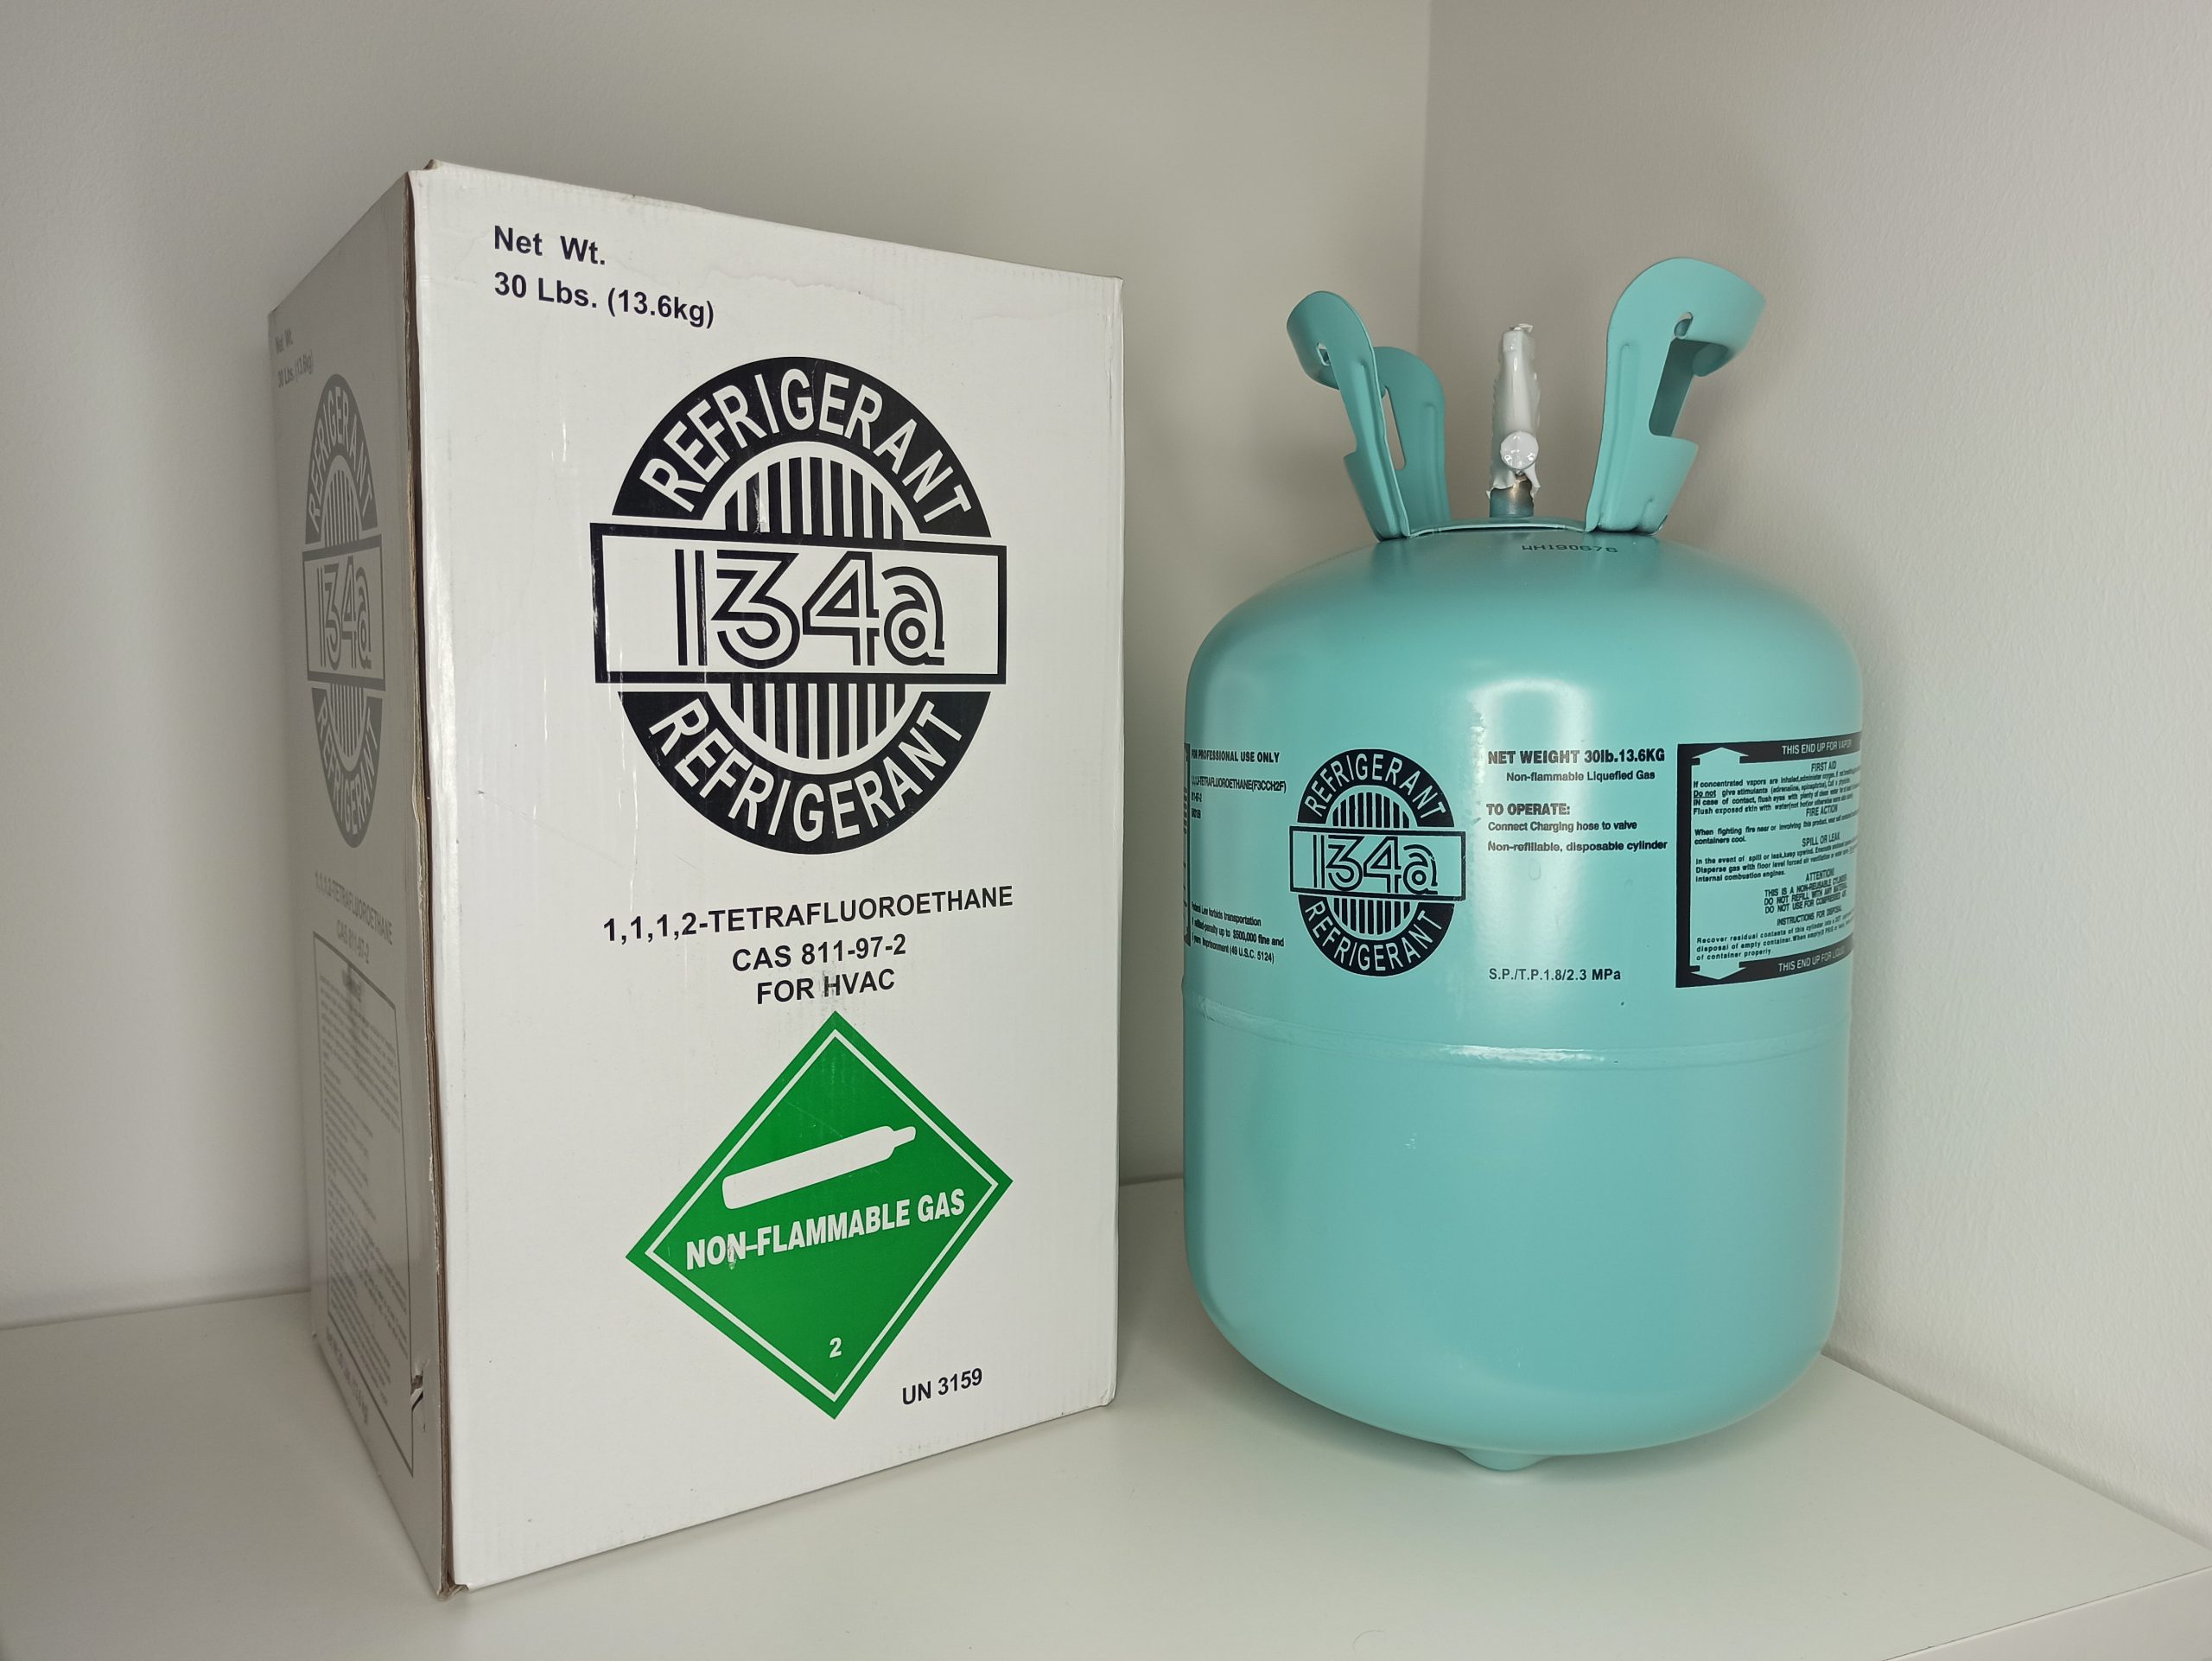 R134a R134 5 Kg refrigerant gaz bouteille rechargeable